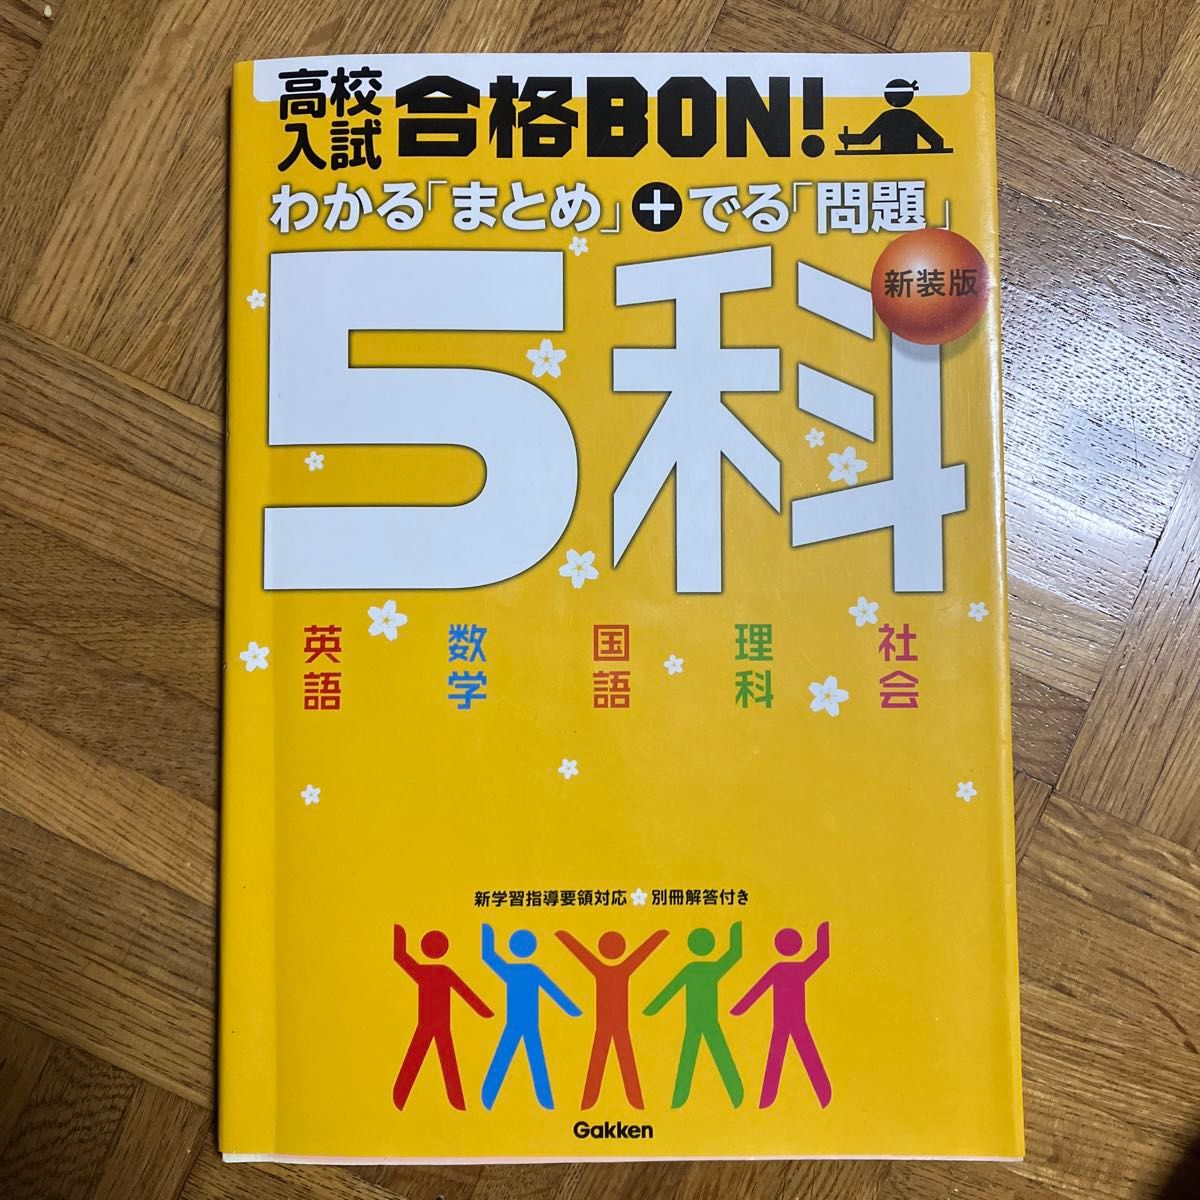 高校入試合格BON! 5科 参考書&問題集 新装版 参考書